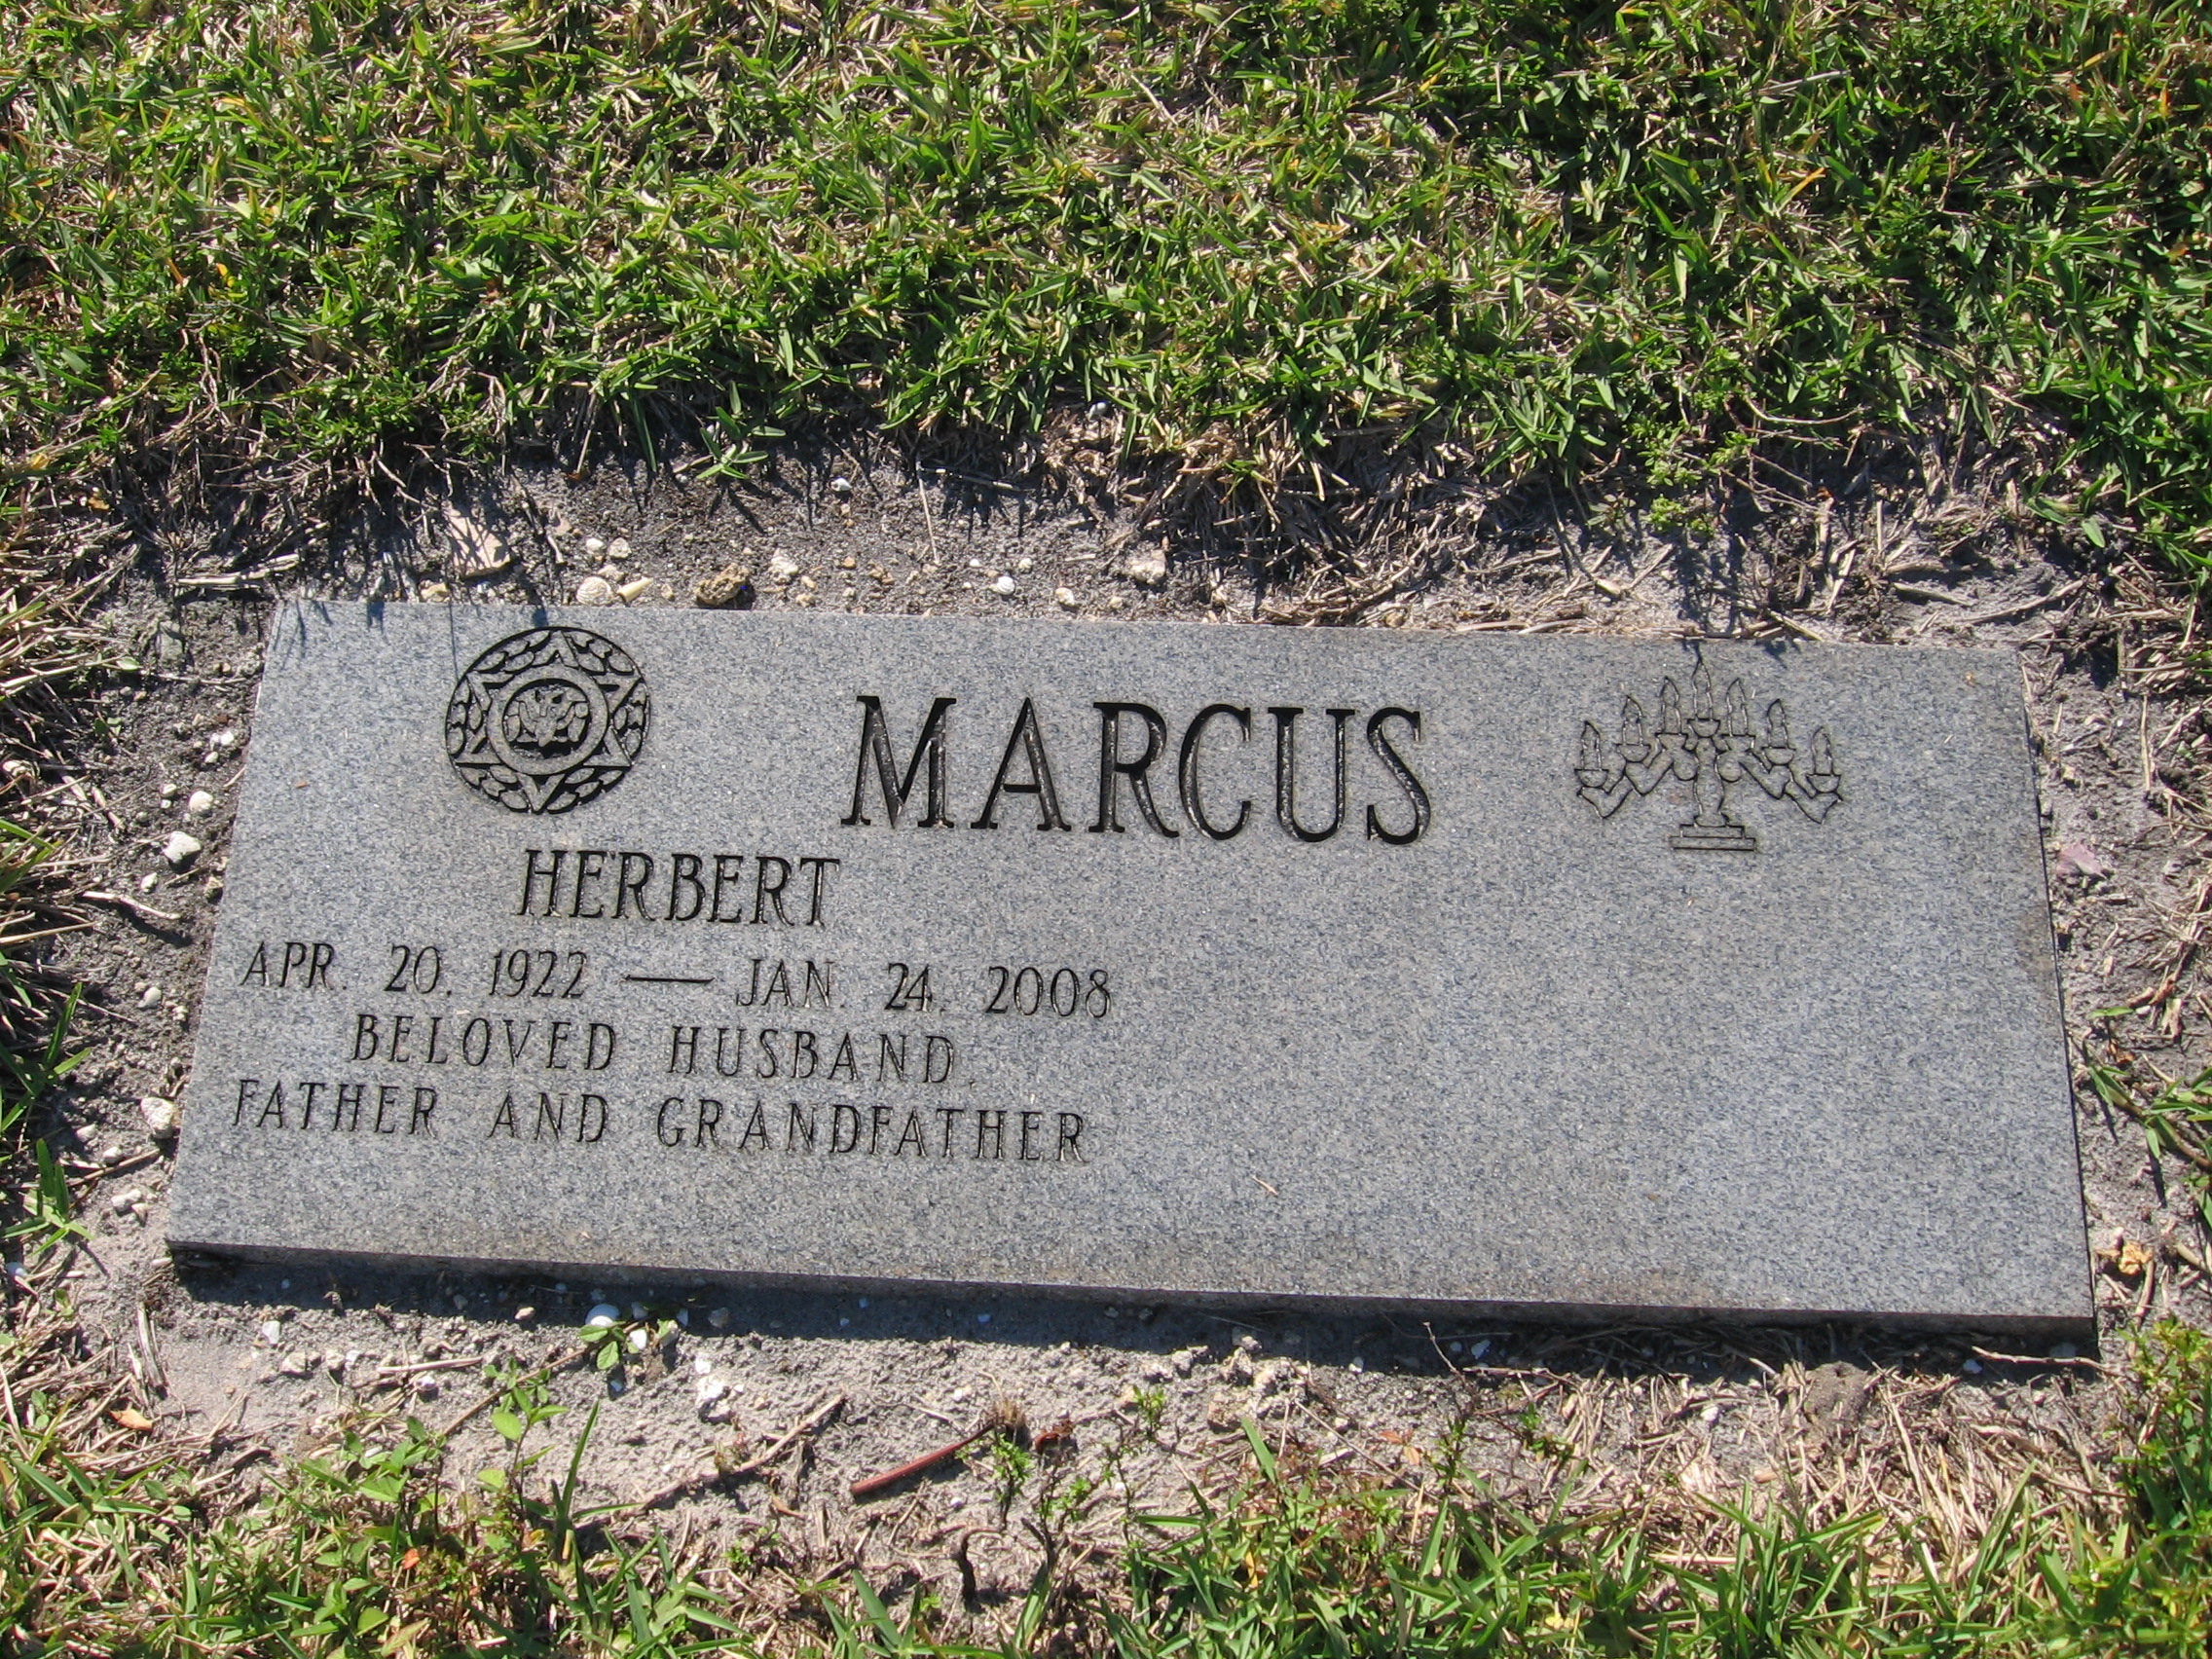 Herbert Marcus